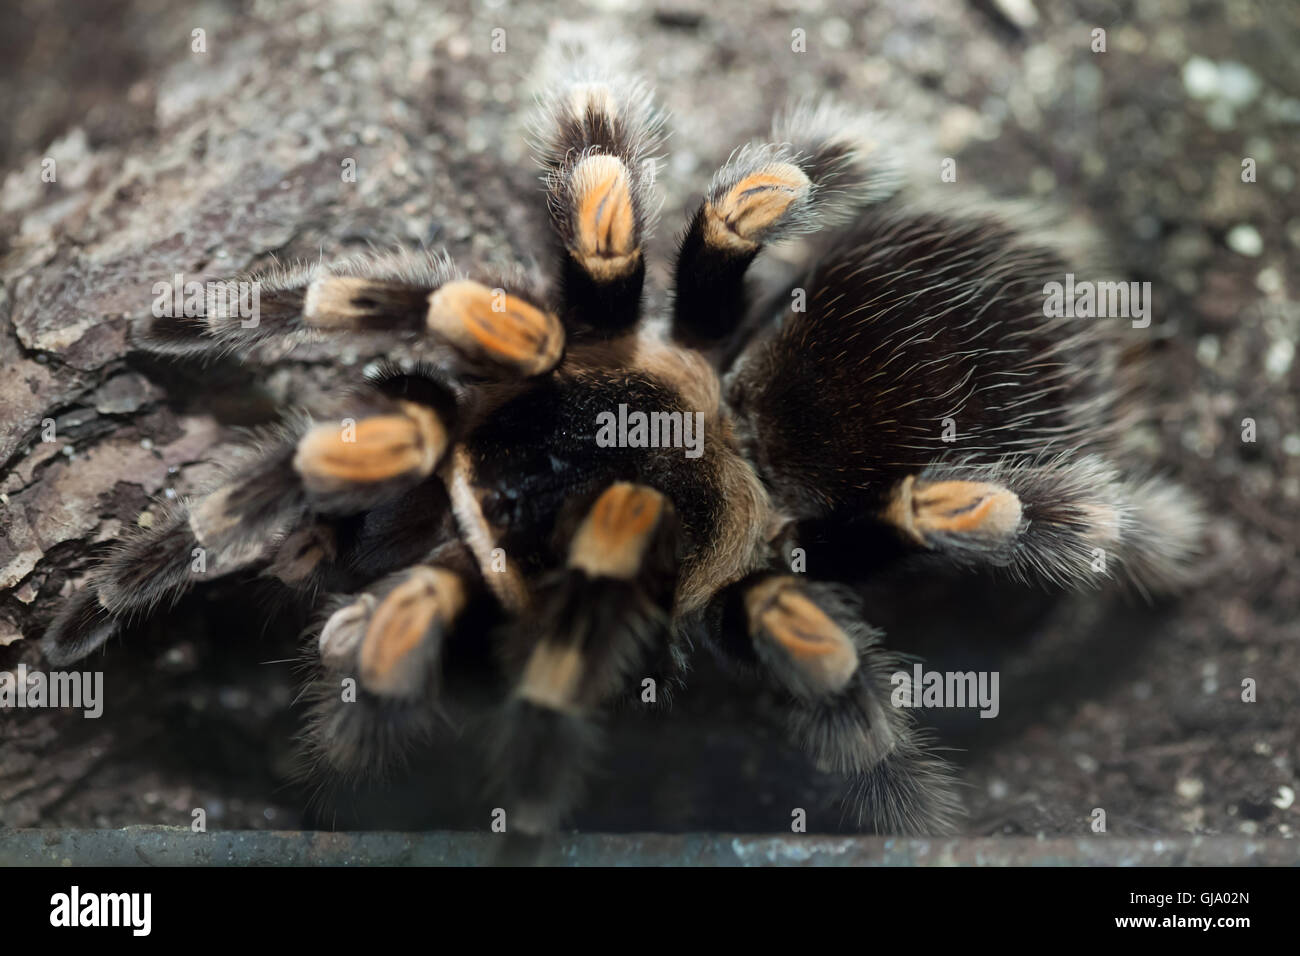 Mexican redknee tarantula (Brachypelma smithi). Stock Photo